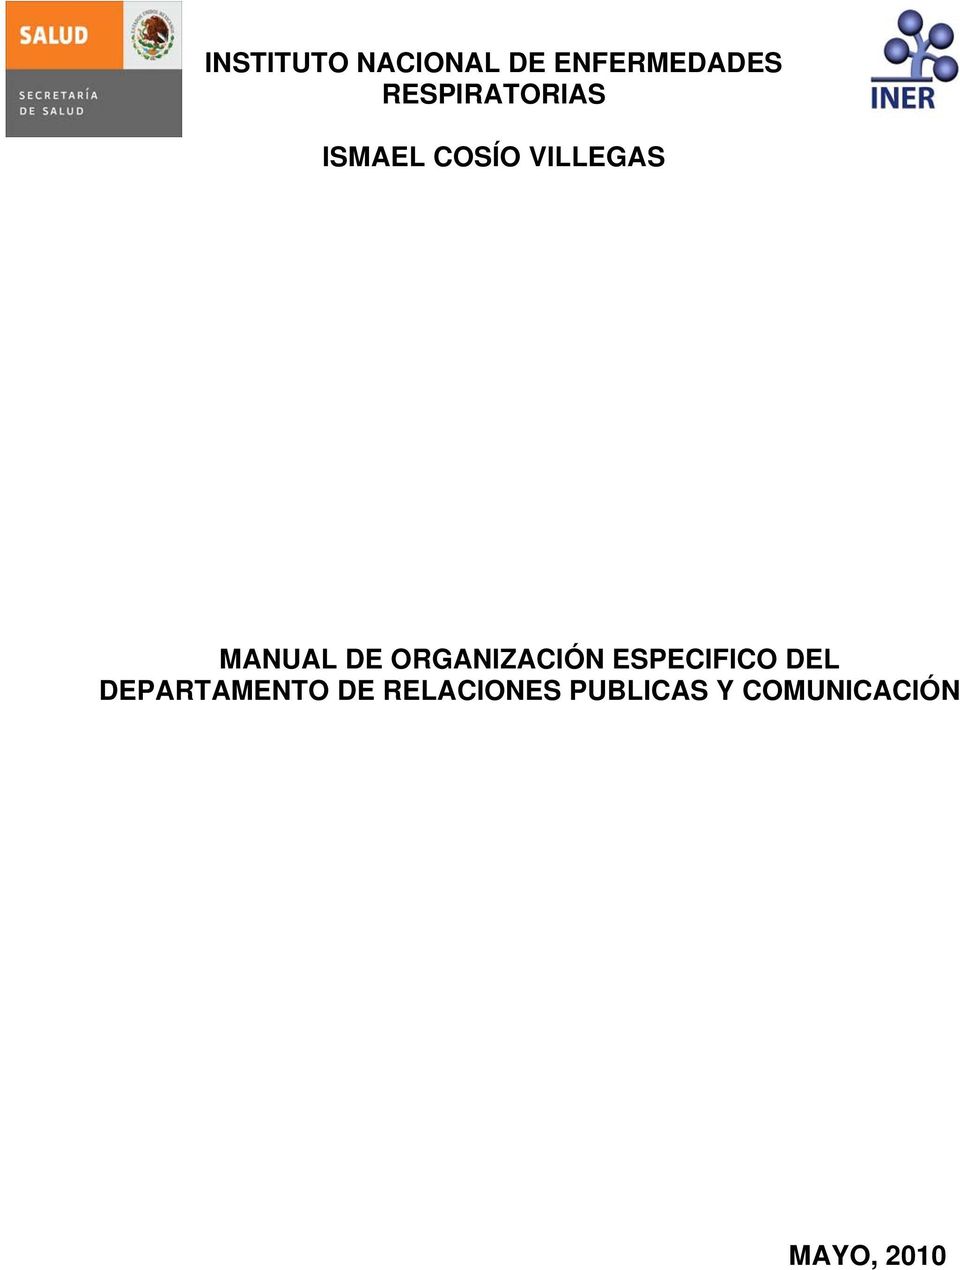 MANUAL DE ORGANIZACIÓN ESPECIFICO DEL